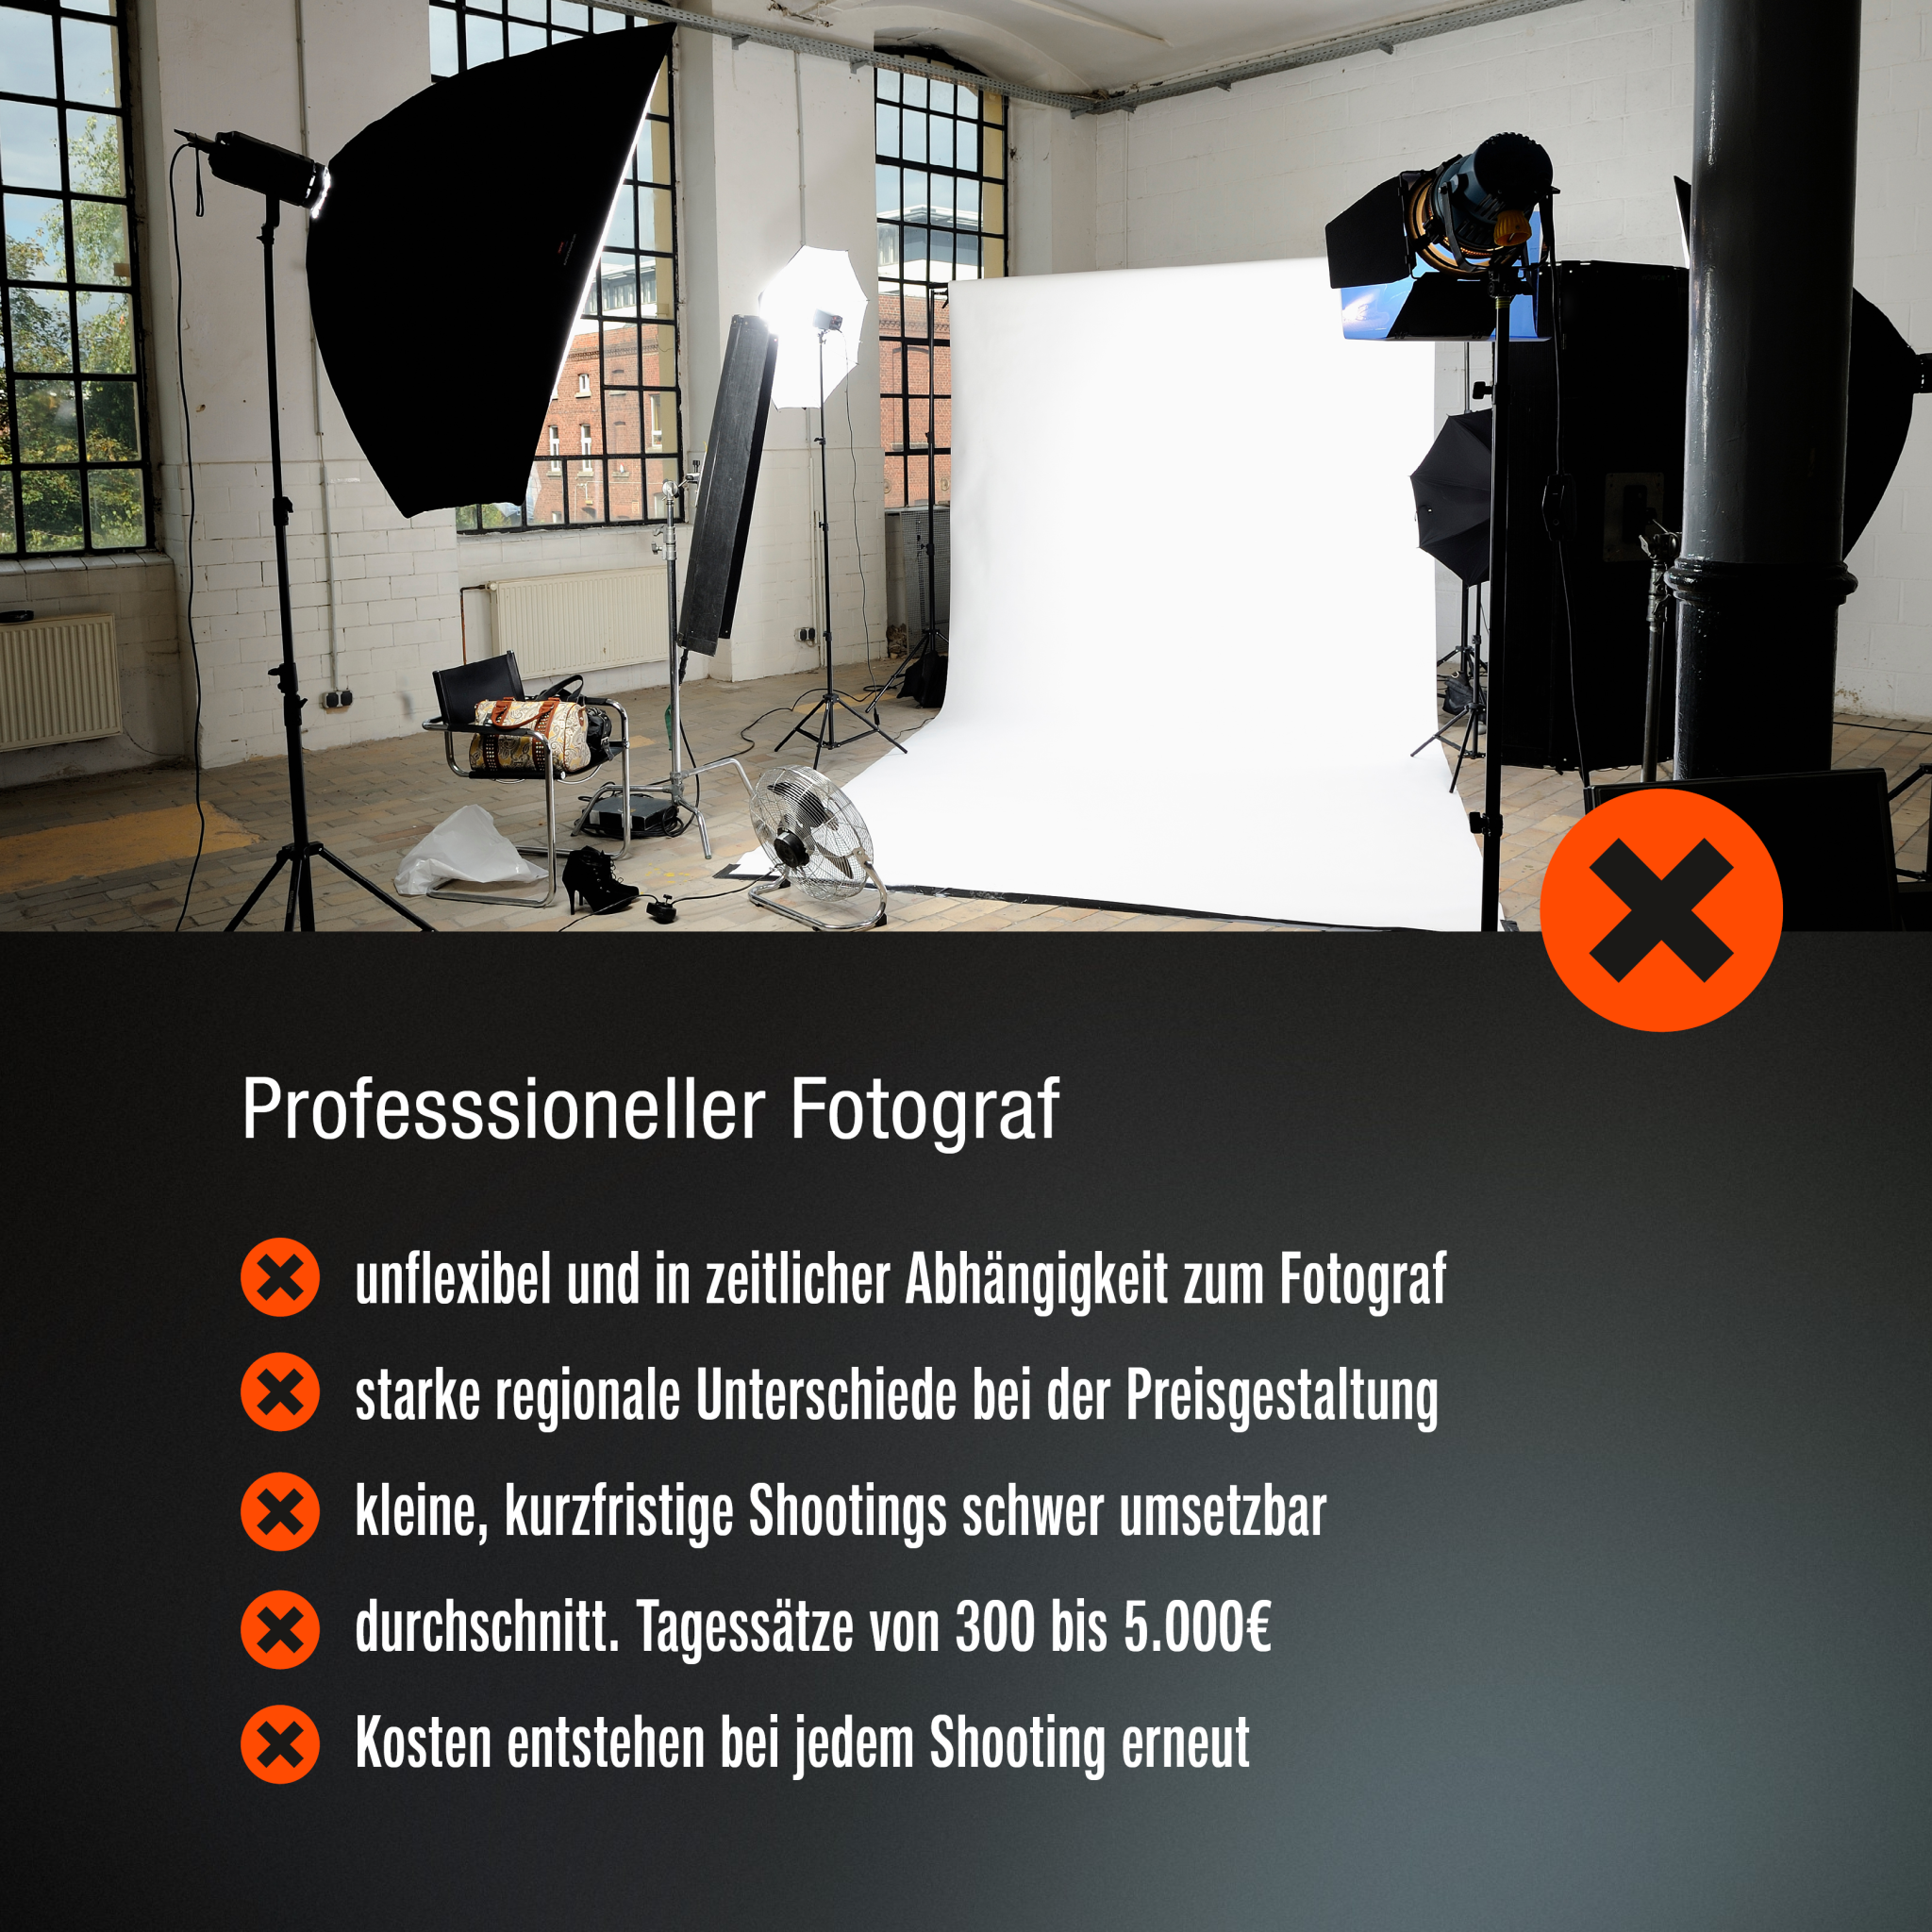 Fotoboxx: Gegegnüberstellung der Preise für konventionelle Produktfotografen